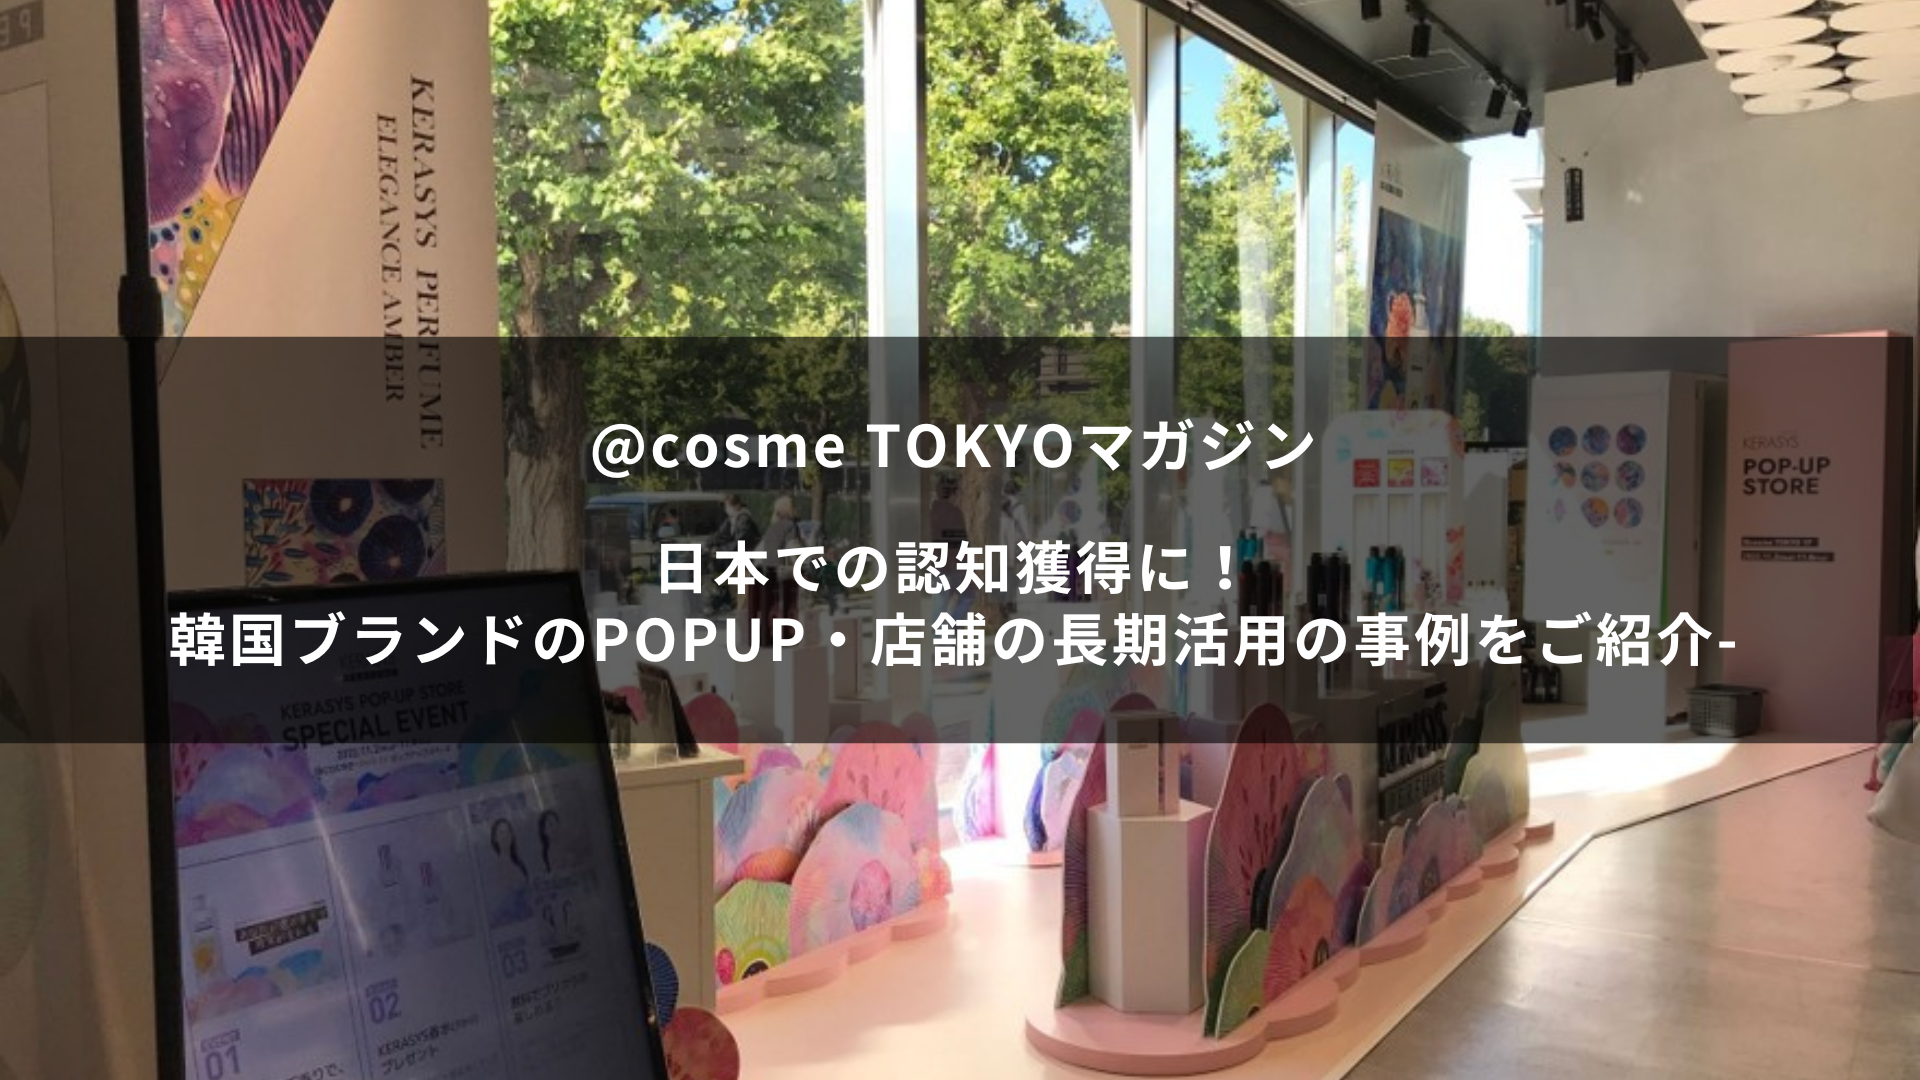 日本での認知獲得に！韓国ブランドのポップアップ・店舗の長期活用の事例をご紹介~@cosme TOKYOマガジン~ サムネイル画像